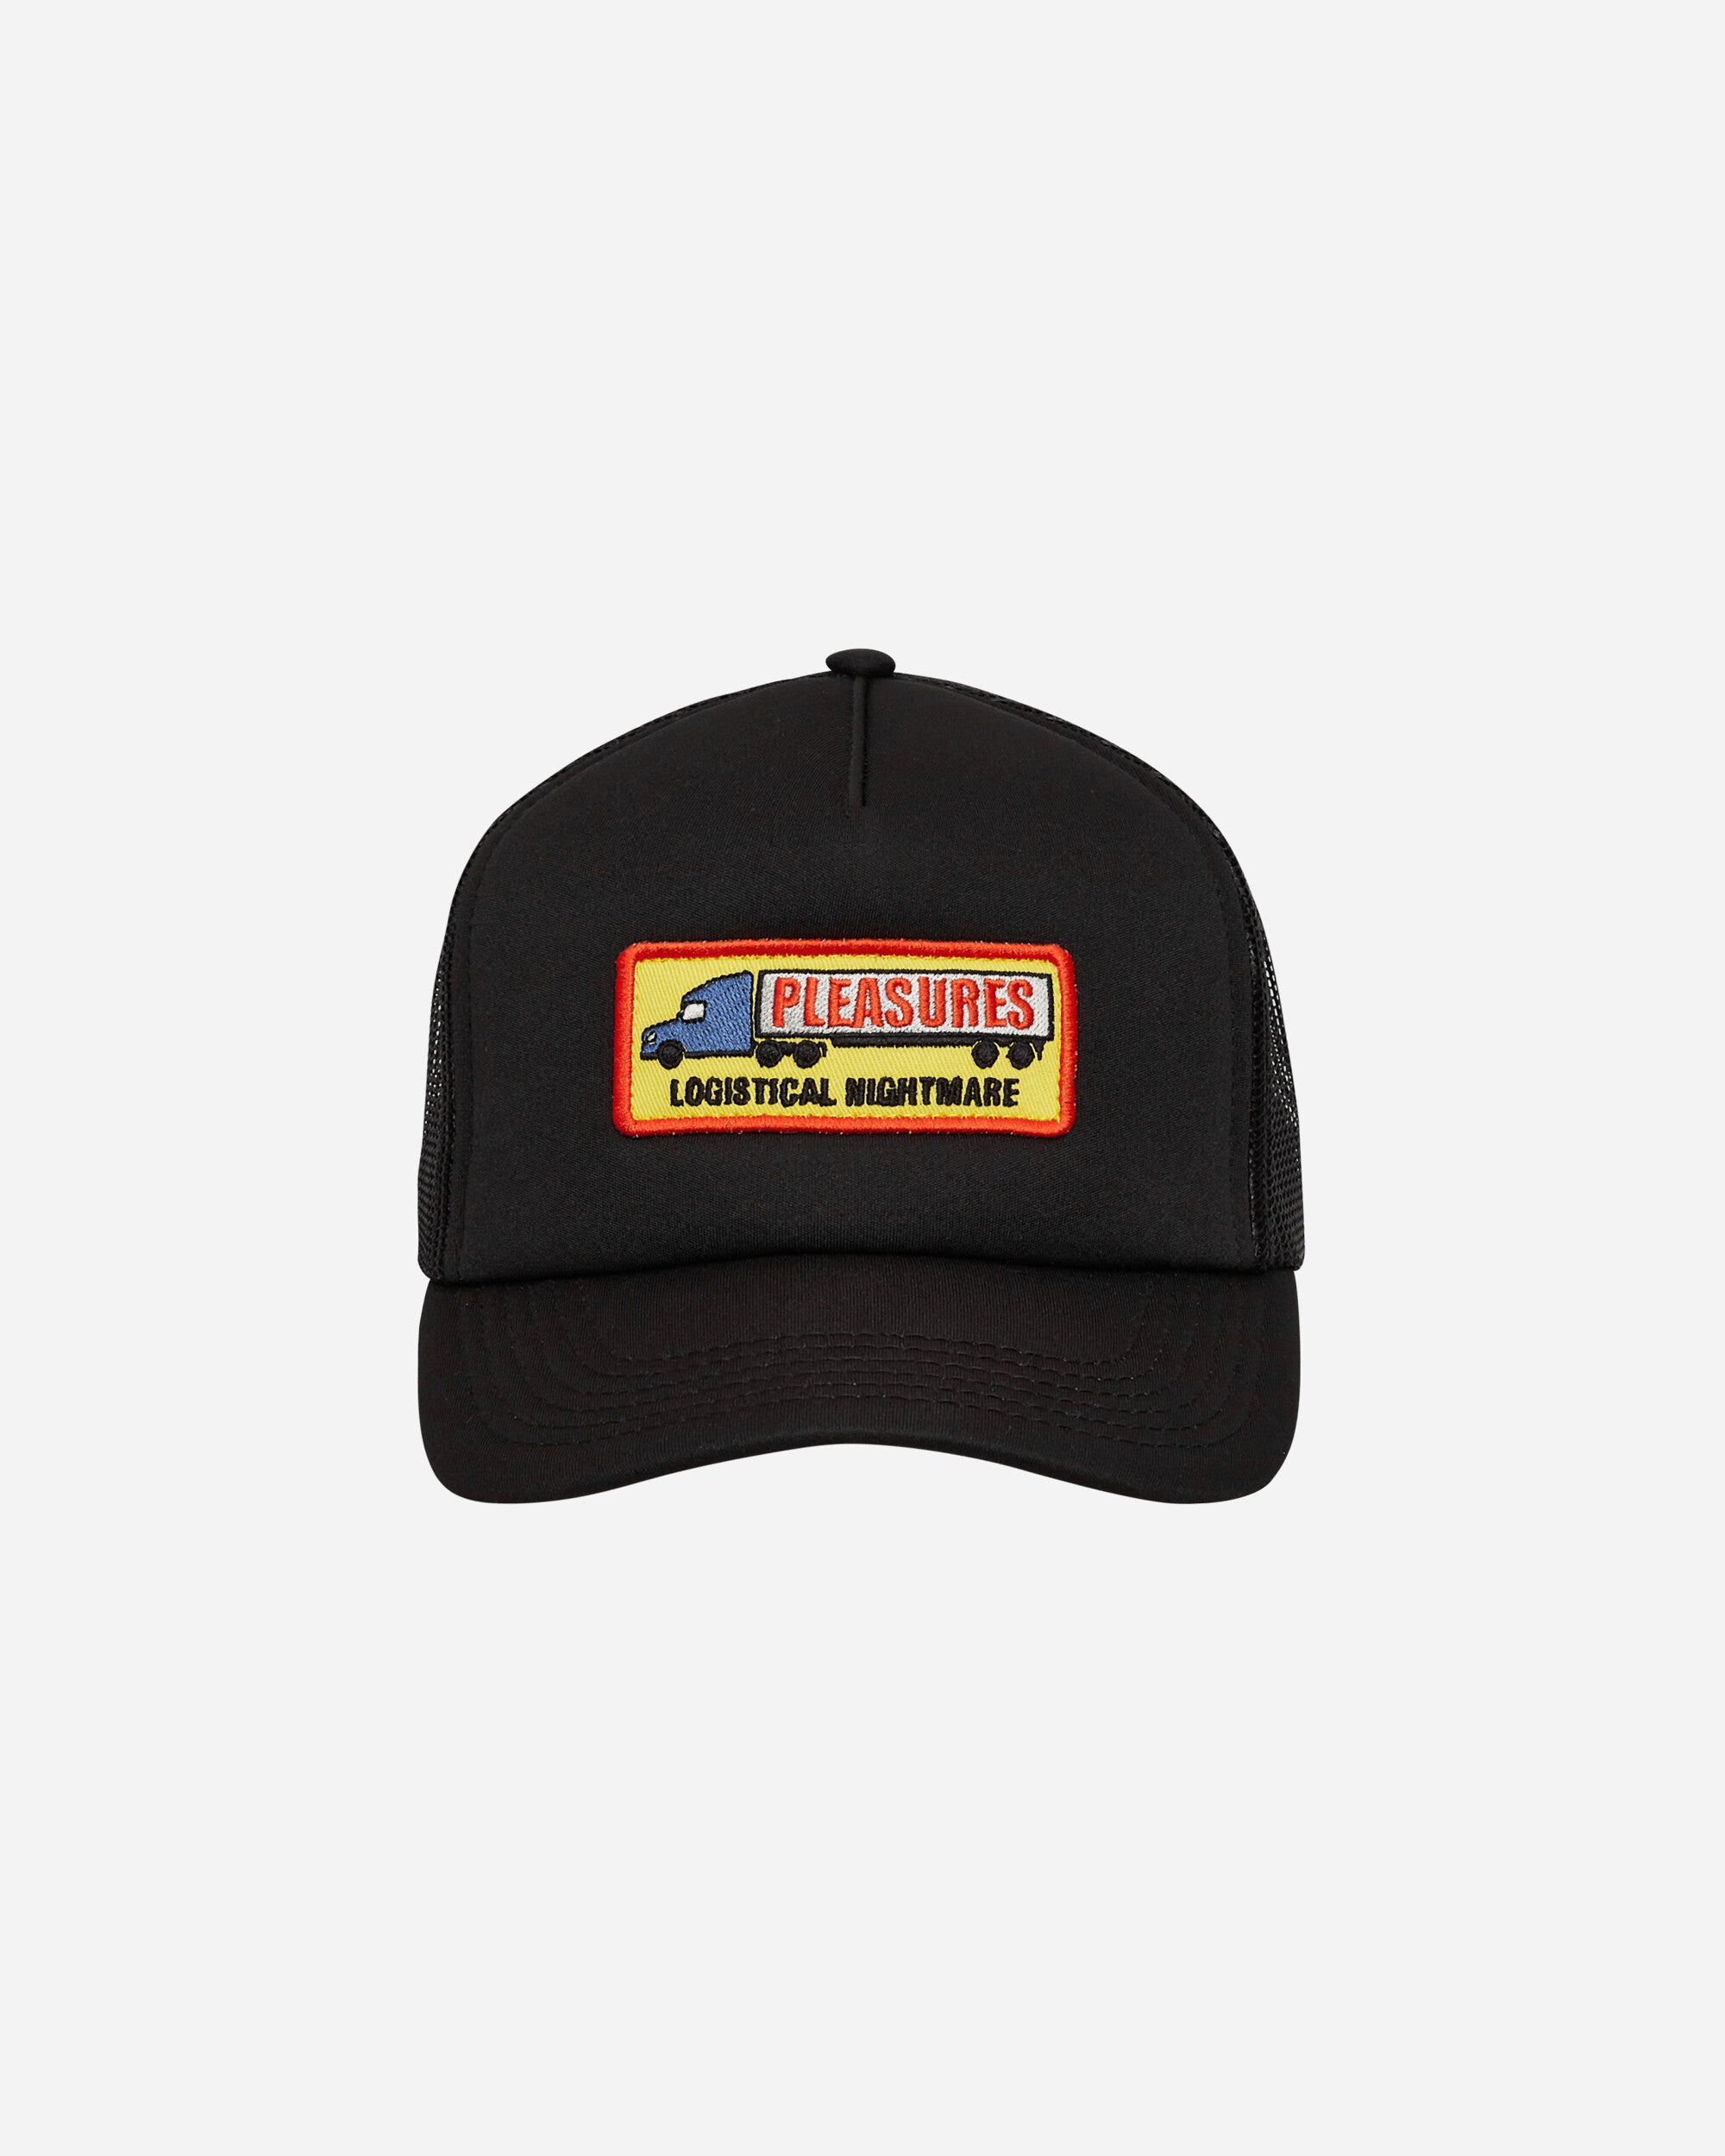 Pleasures Nightmare Trucker Black Hats Caps 9508020 BLACK